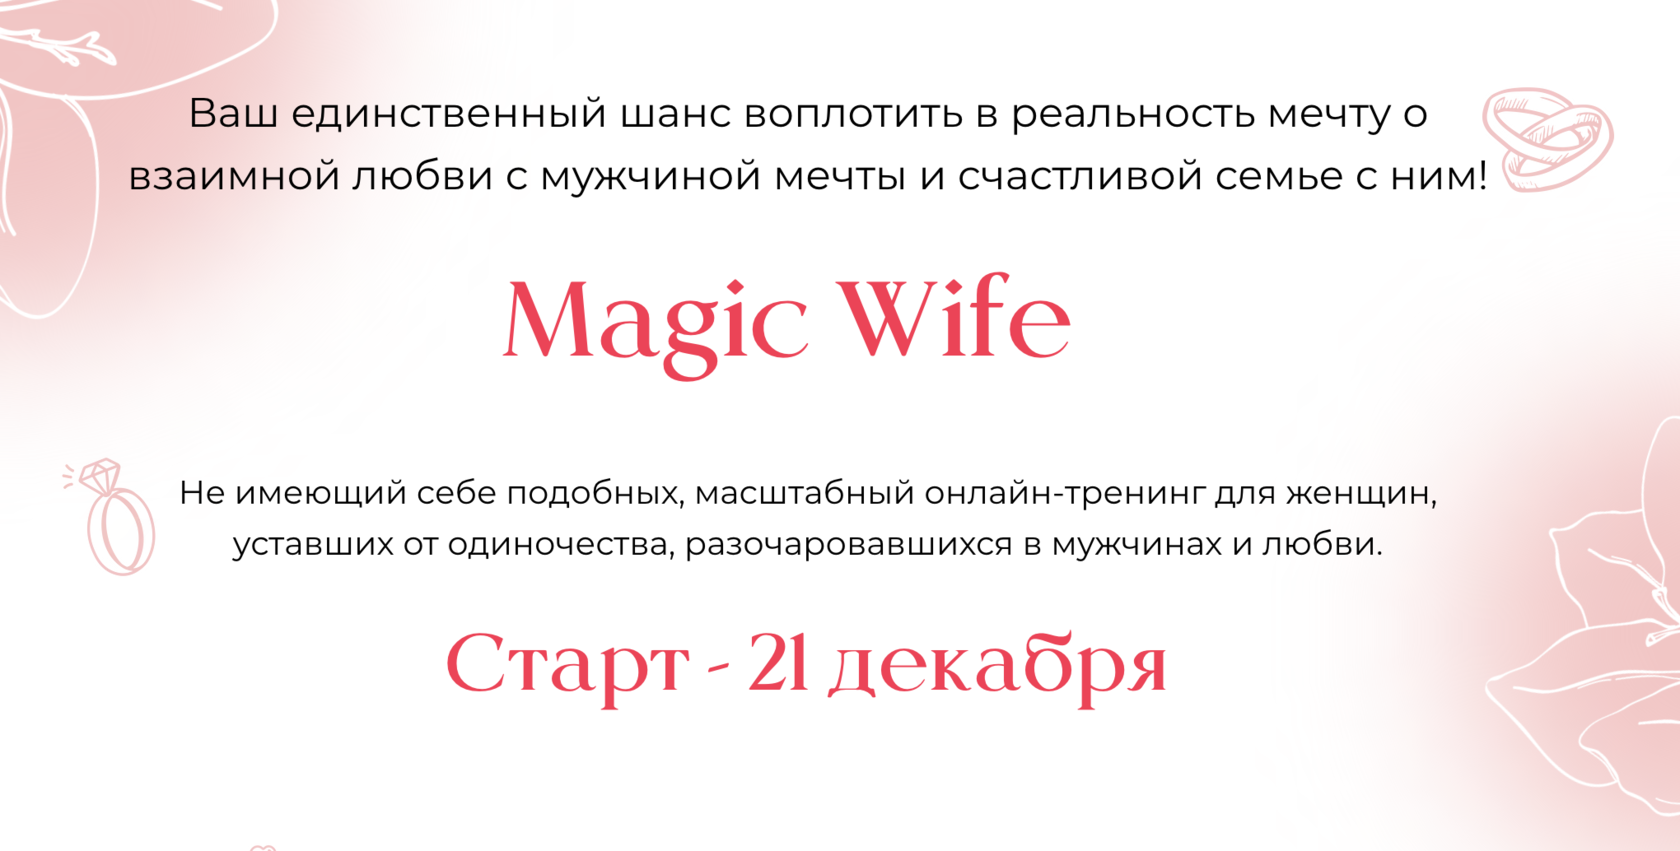 Magic wife. Magic wife Красина. Жена Мэджика.